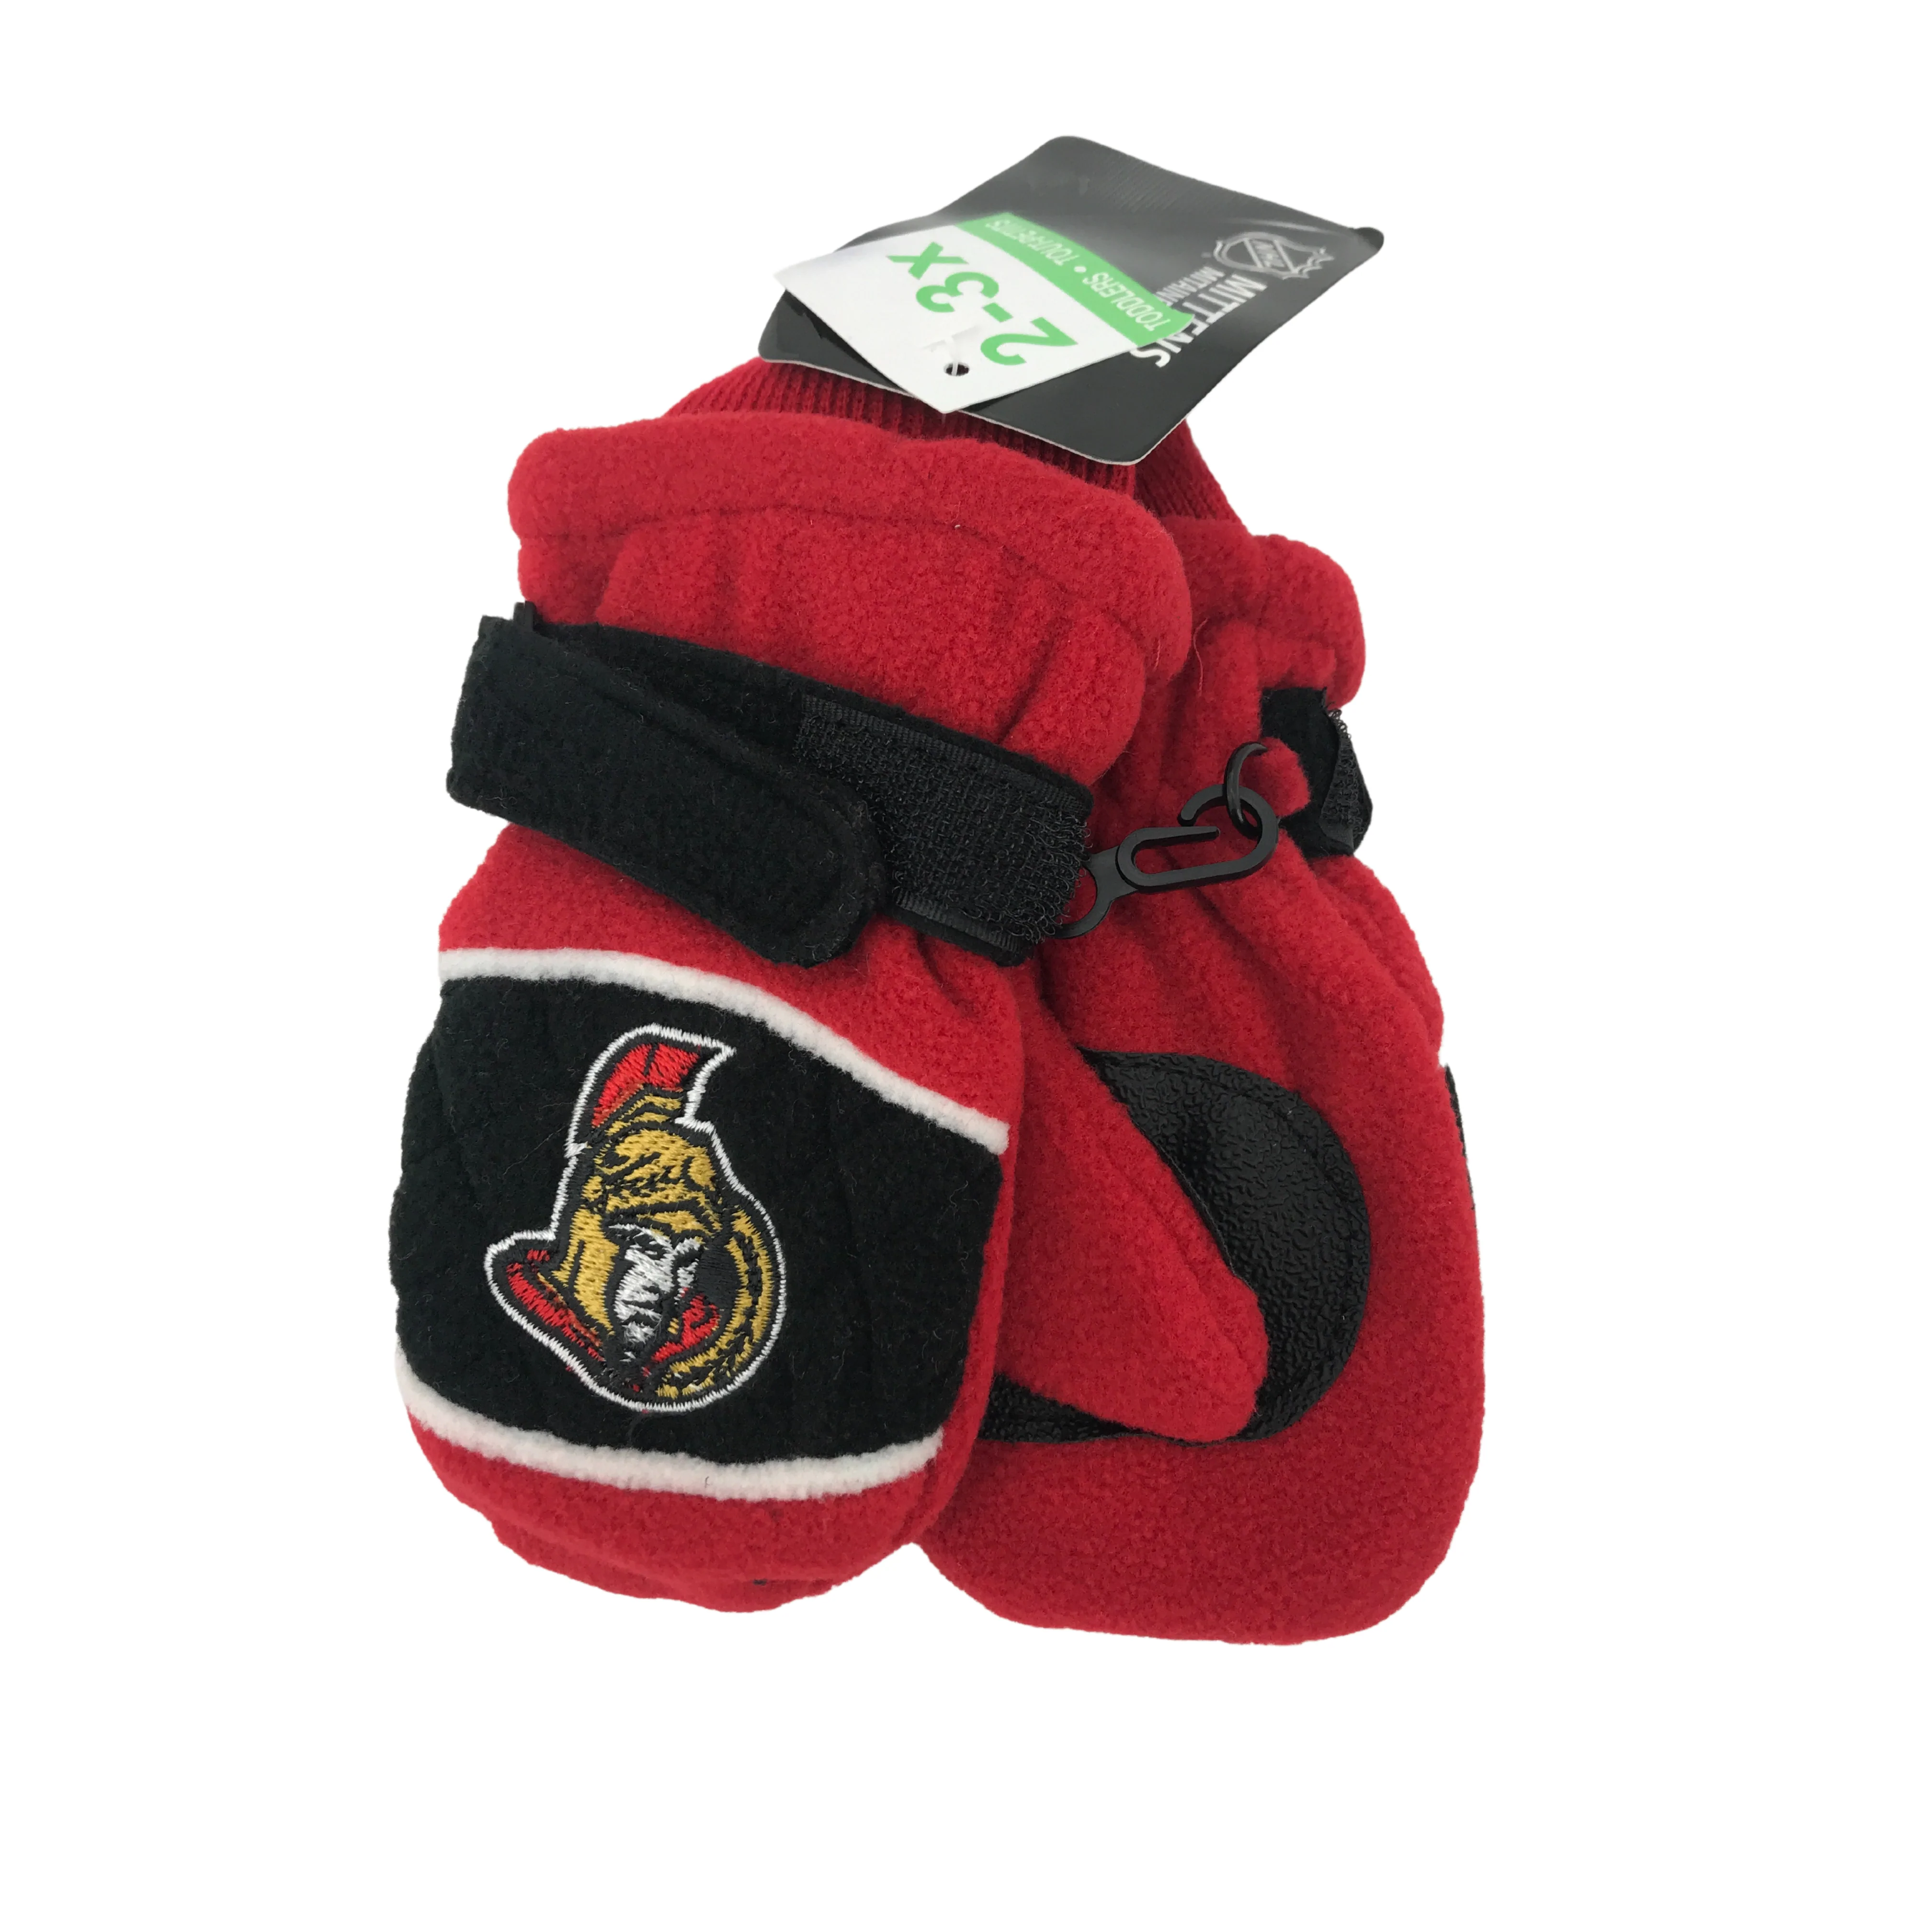 Ottawa Senators Kid's Winter Mittens / Red / Size 2-3x / Kid's Gloves / Winter Gear